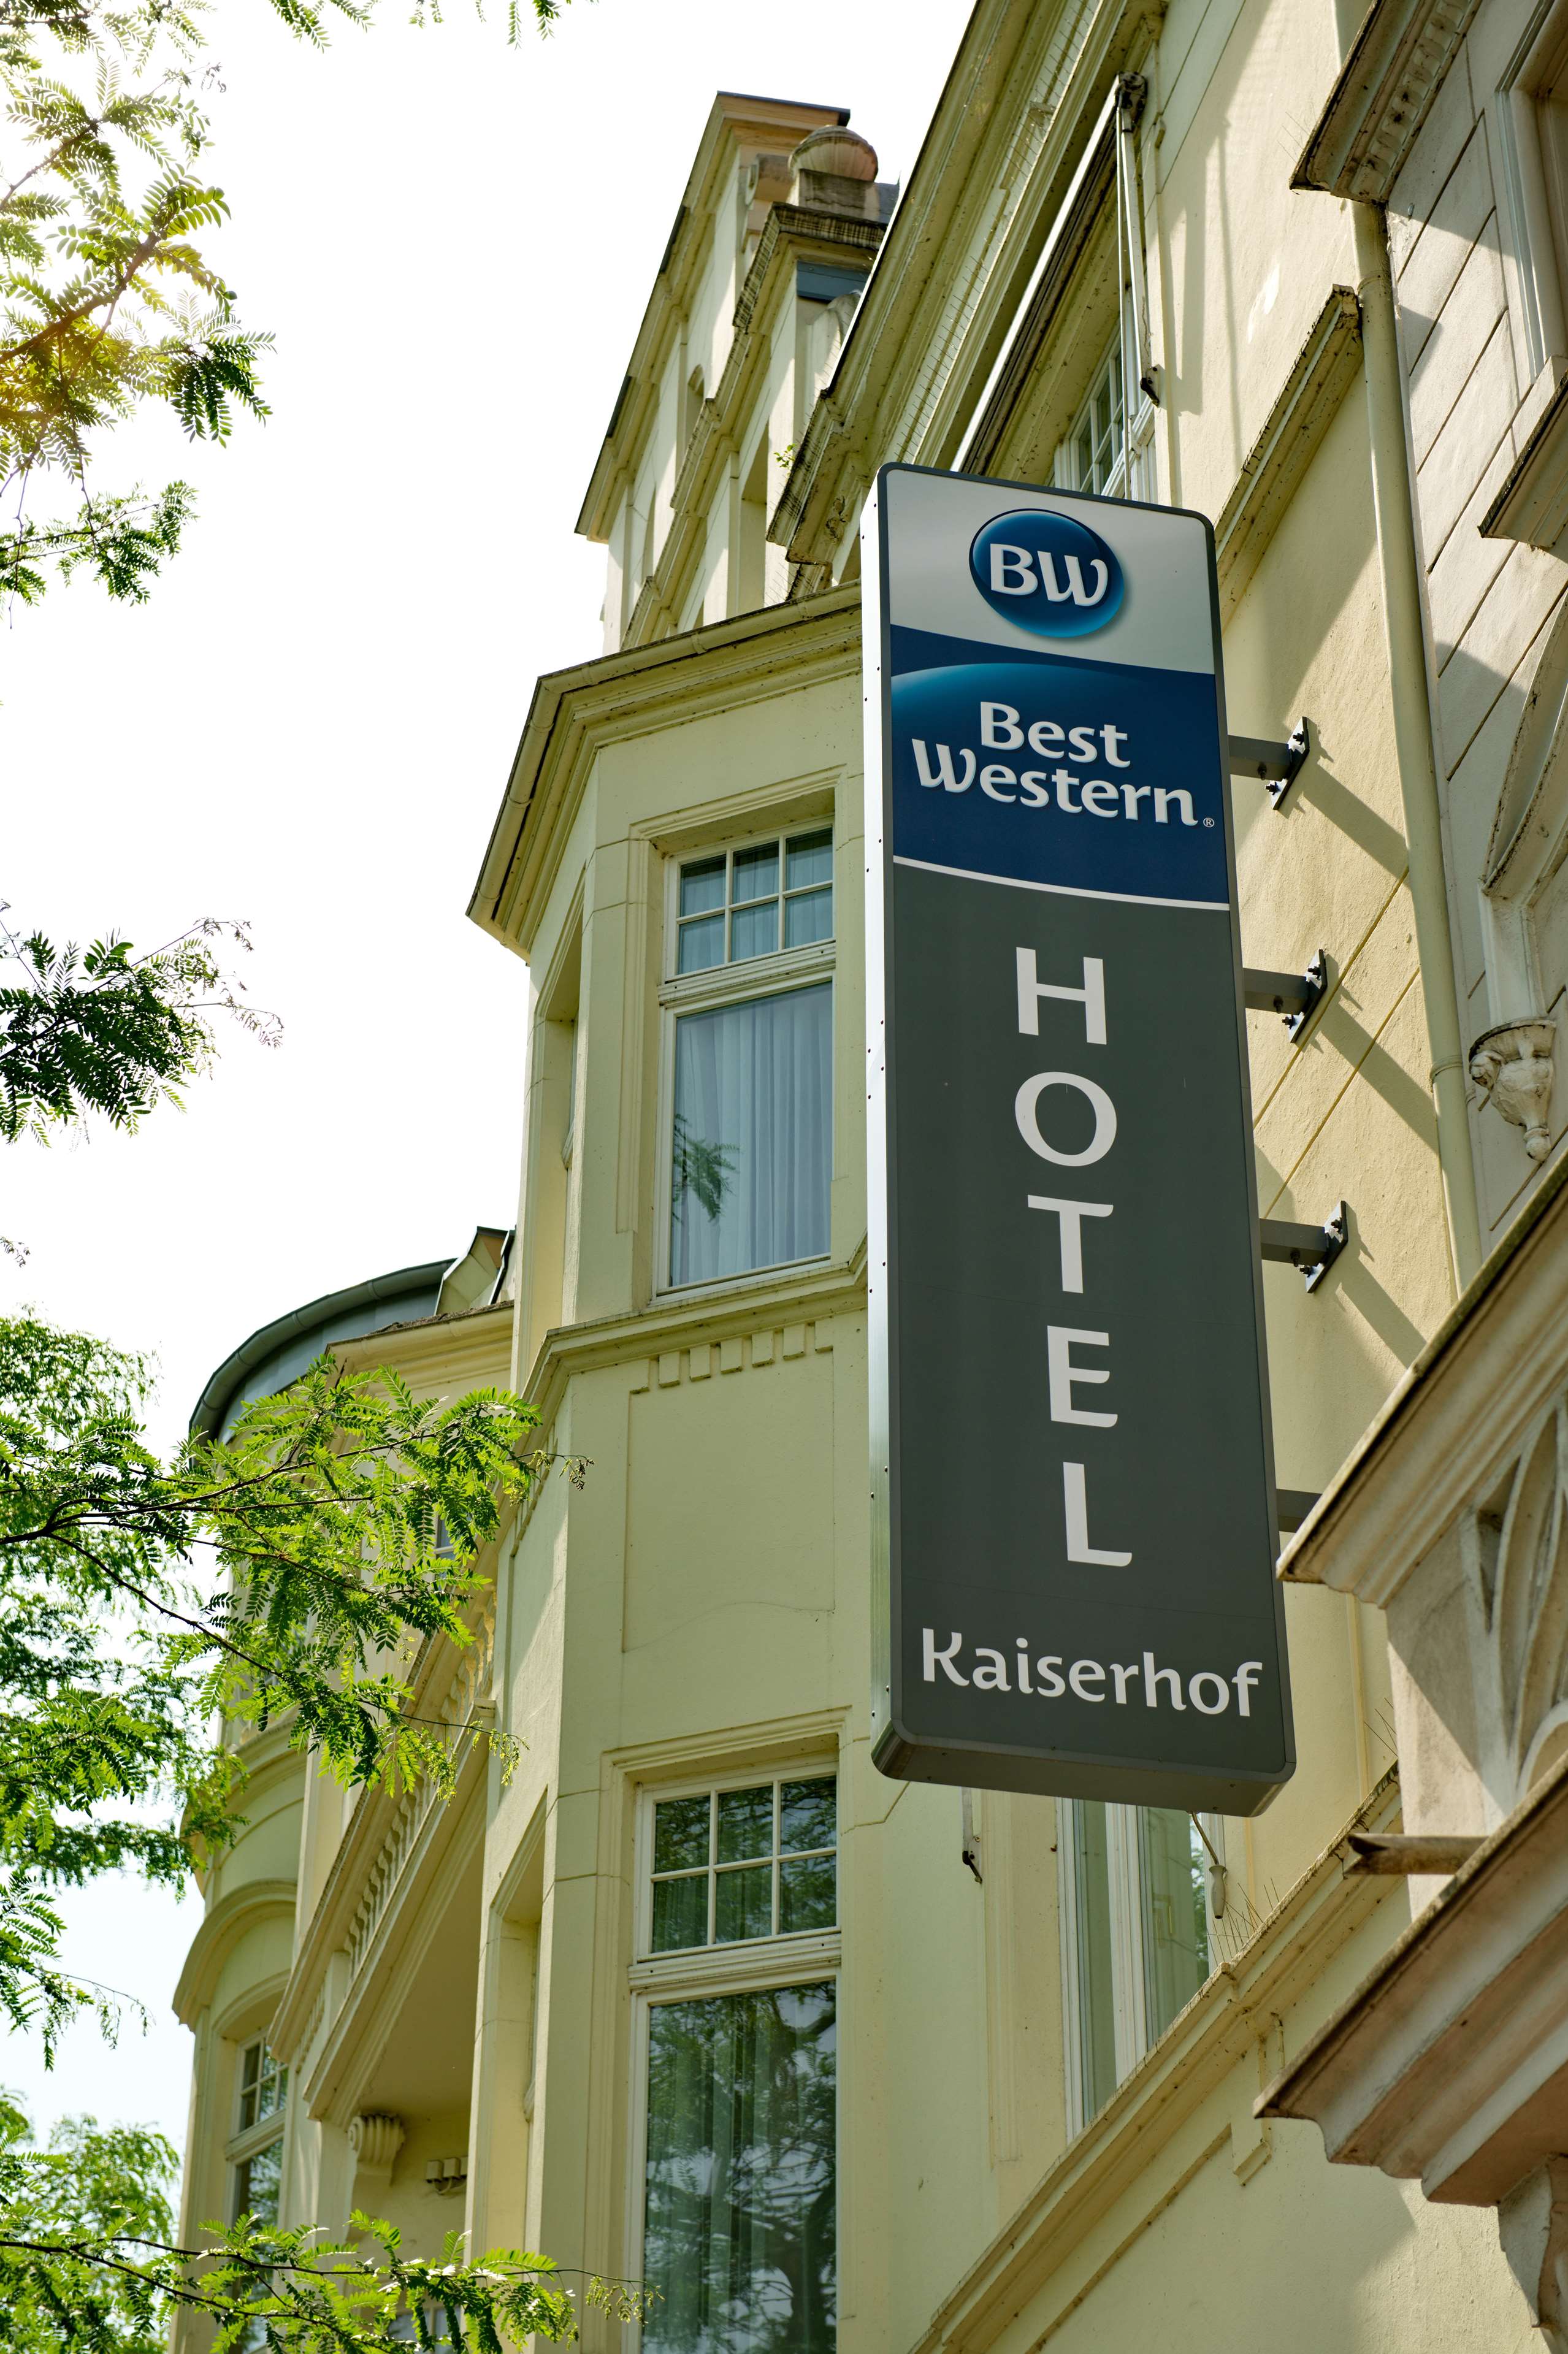 Best Western Hotel Kaiserhof, Moltkestrasse 64 in Bonn